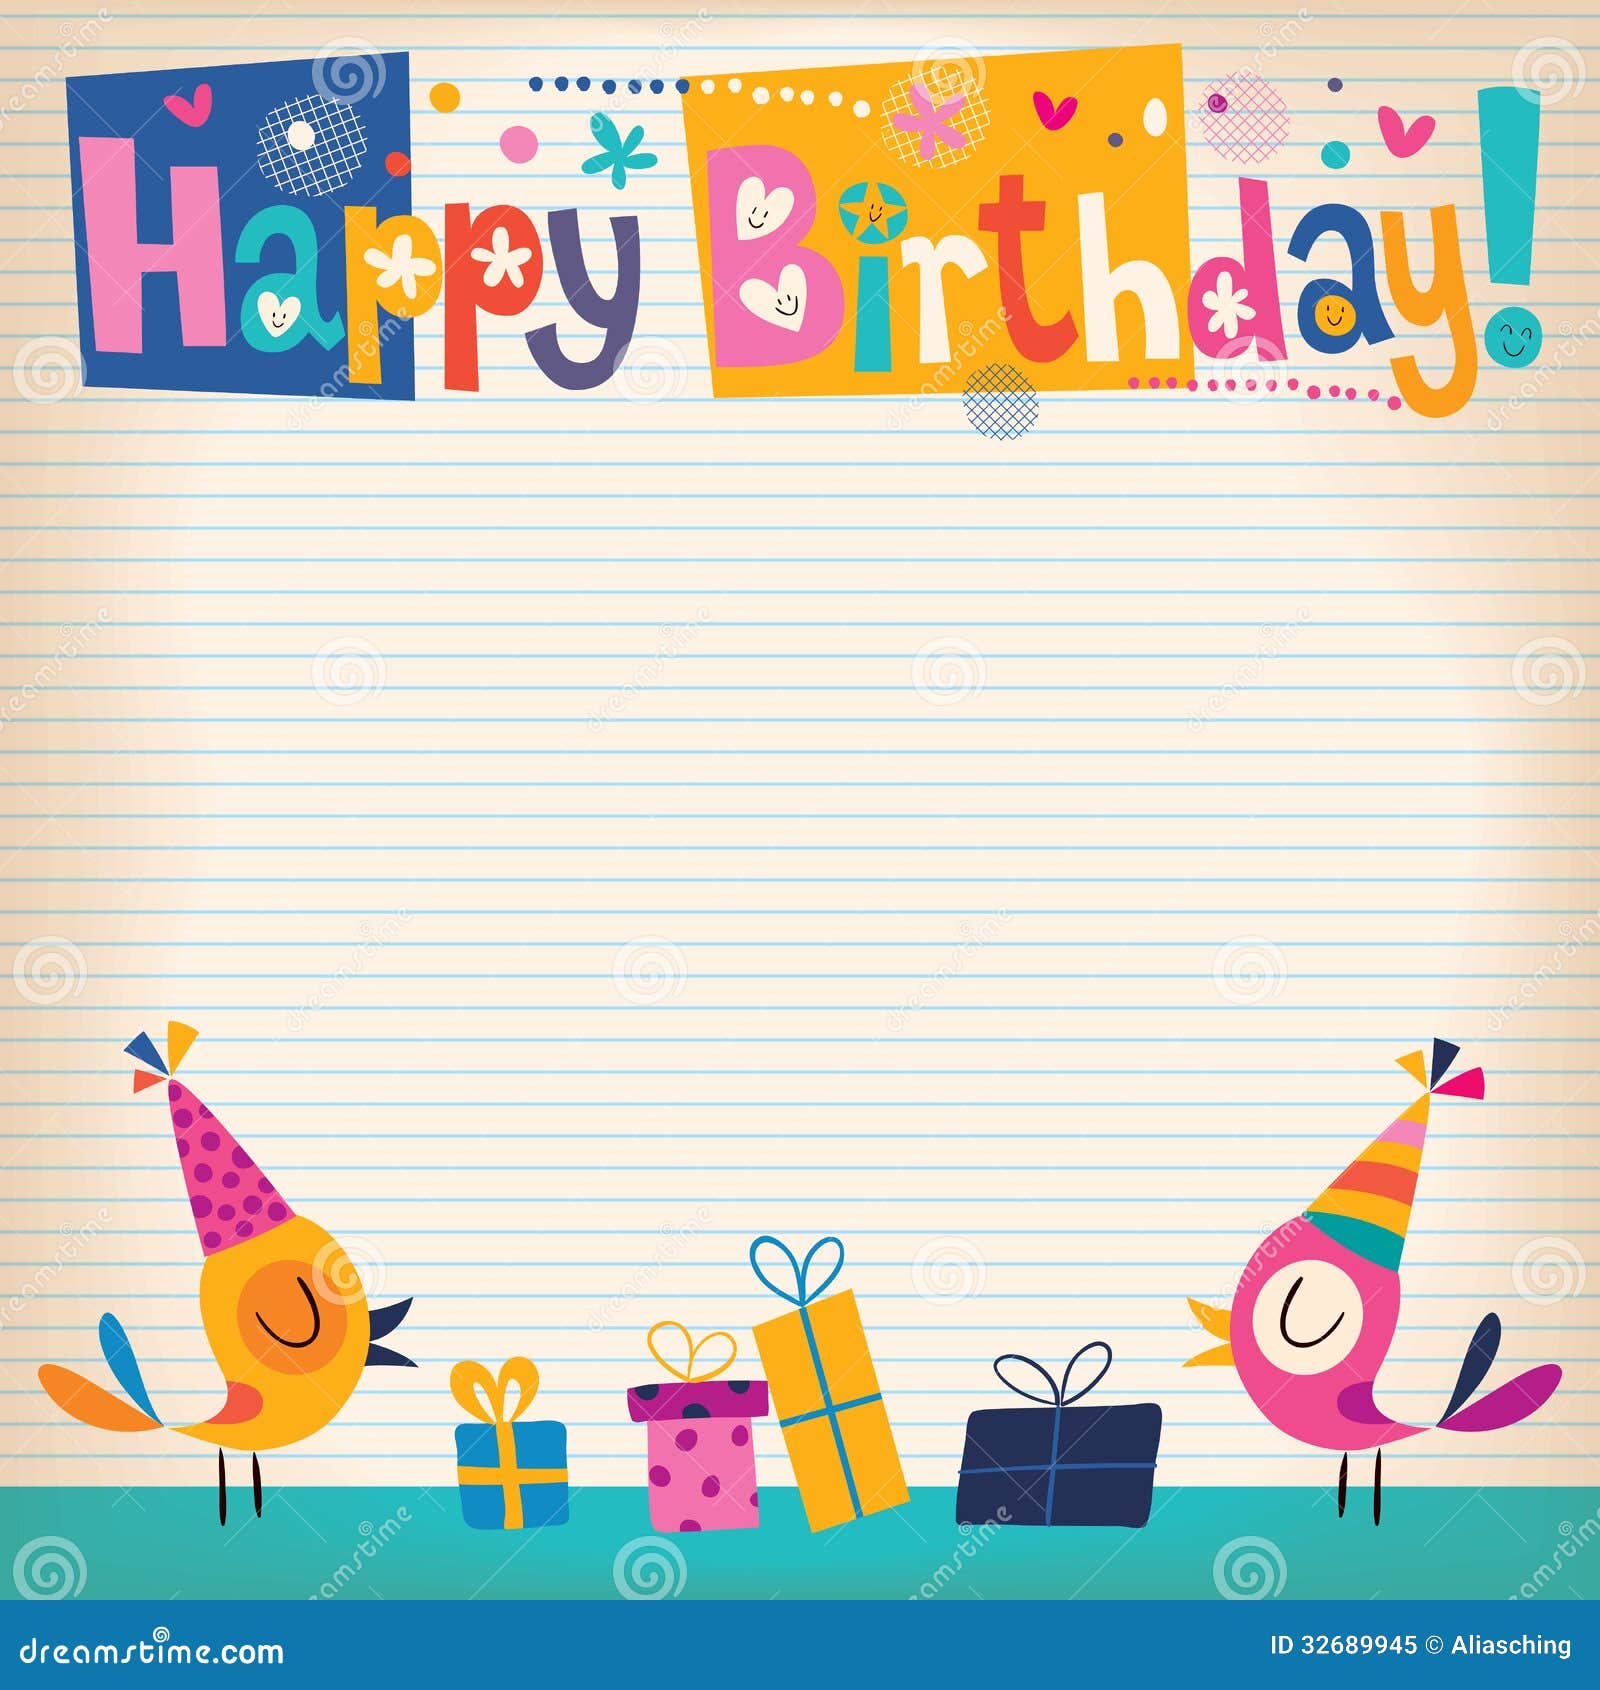 Birthday Stationery 6522 8.5 x 11-60 Sheets Happy Birthday Printer Paper 